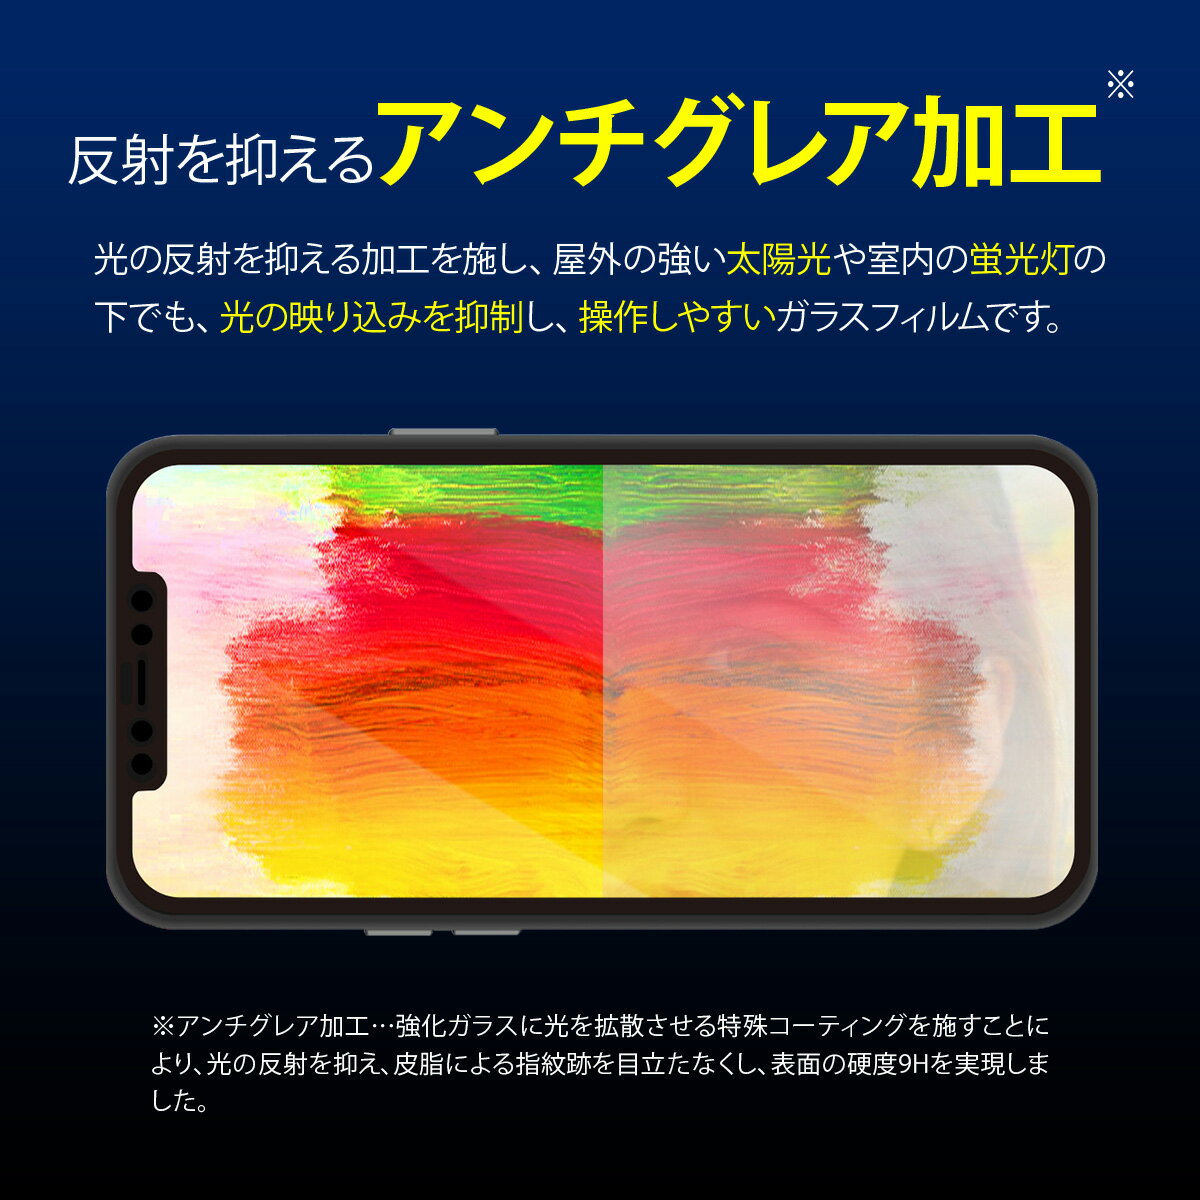 iPhone12 Pro Max ガラスフィルム 2枚 セット アンチグレア 反射防止 さらさら マット タイプ 全面 保護 日本製 AGC 強化 ガラス 指紋 防止 フルカバー ガイド 枠 付き フィルム [ iPhone 12 Pro Max アイフォン12ProMax アイフォン12プロマックス 対応 ] Corallo NU GLASS